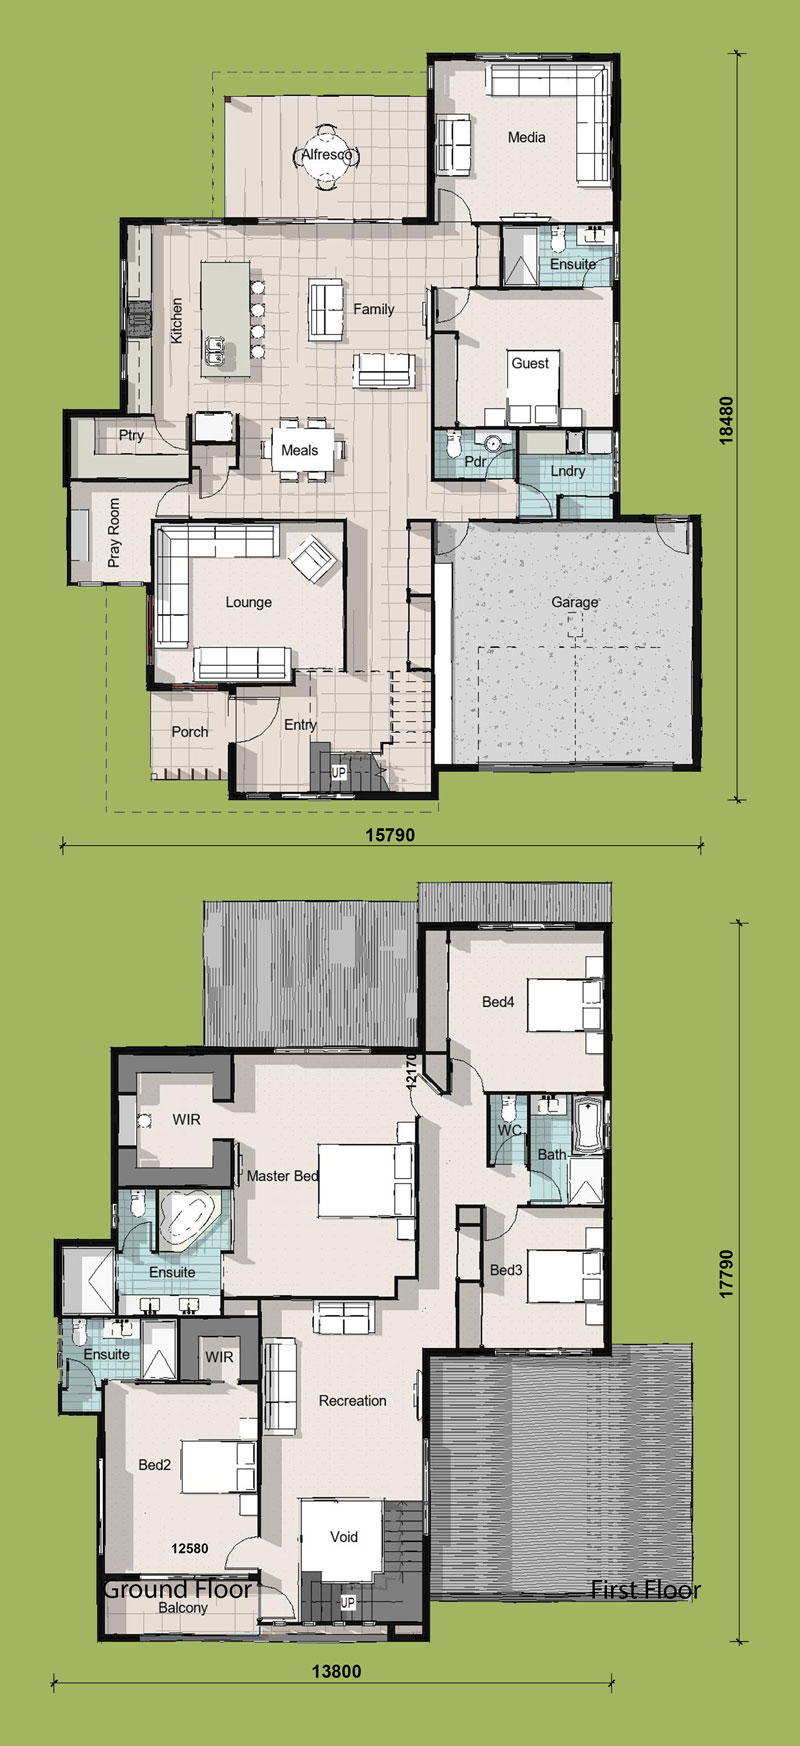 Two Storey House Plan Uk Image To U